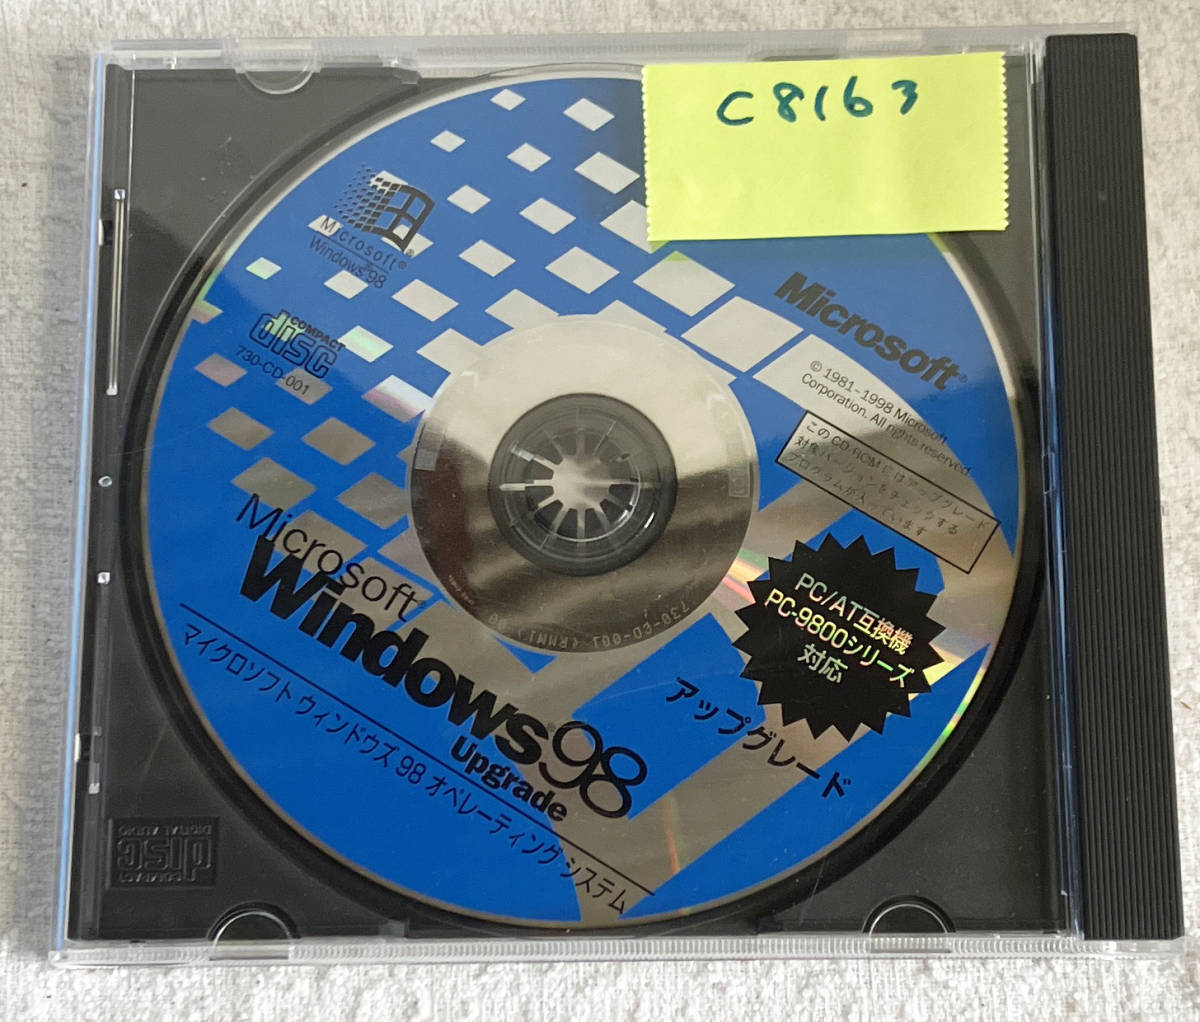 管C8163 Microsoft Windows98 マイクロソフト ウインドウズ98 オペレーティングシステム Upgrade PC/AT互換機 PC-9800シリーズ対応_画像1